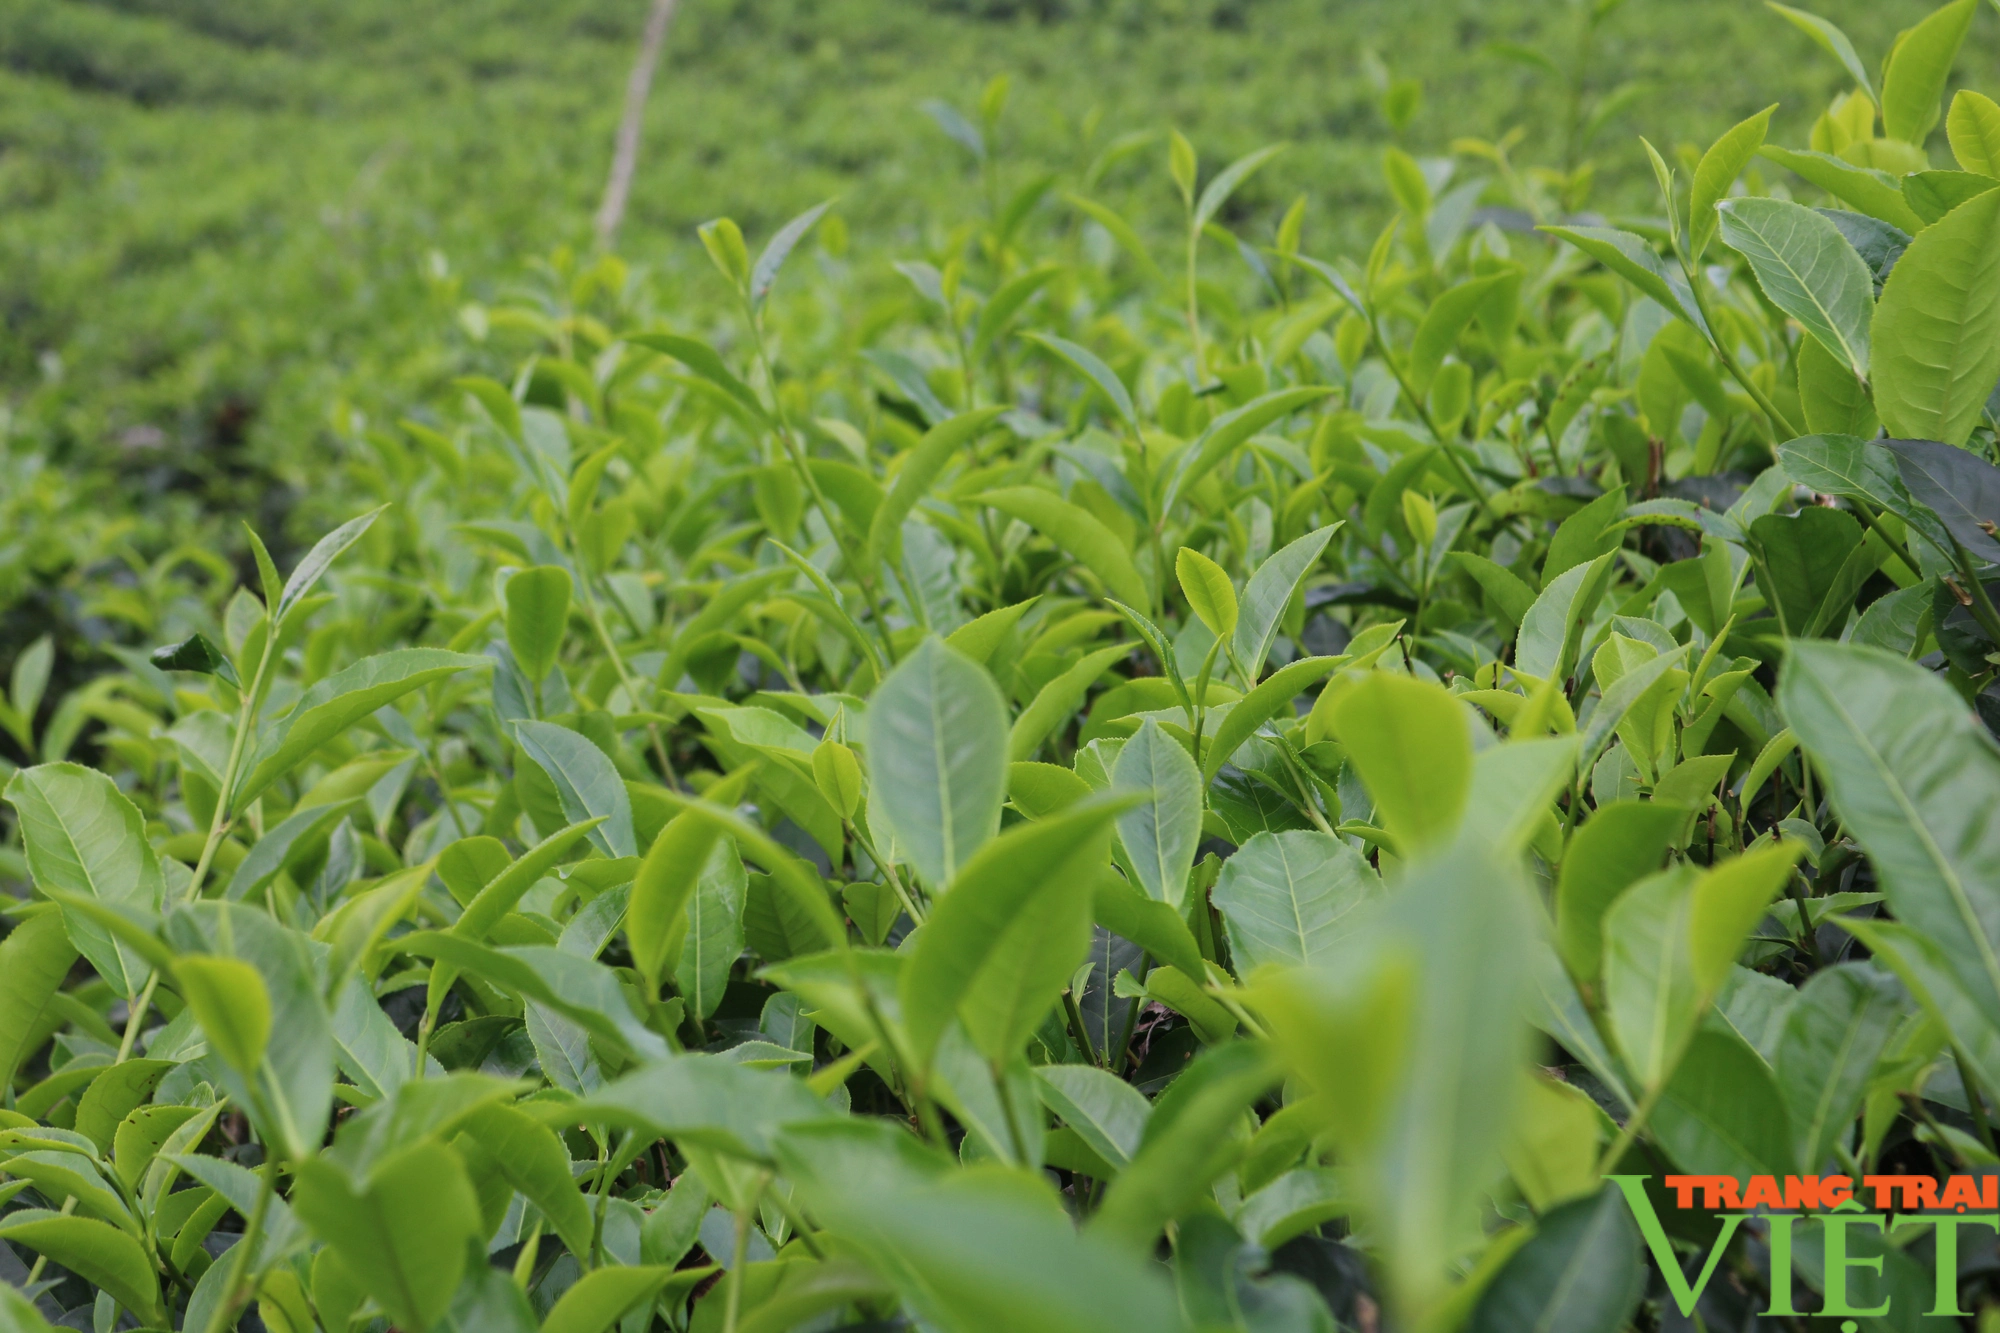 Phát triển cây chè bền vững gắn với nâng cao thu nhập cho nông dân Lào Cai - Ảnh 4.